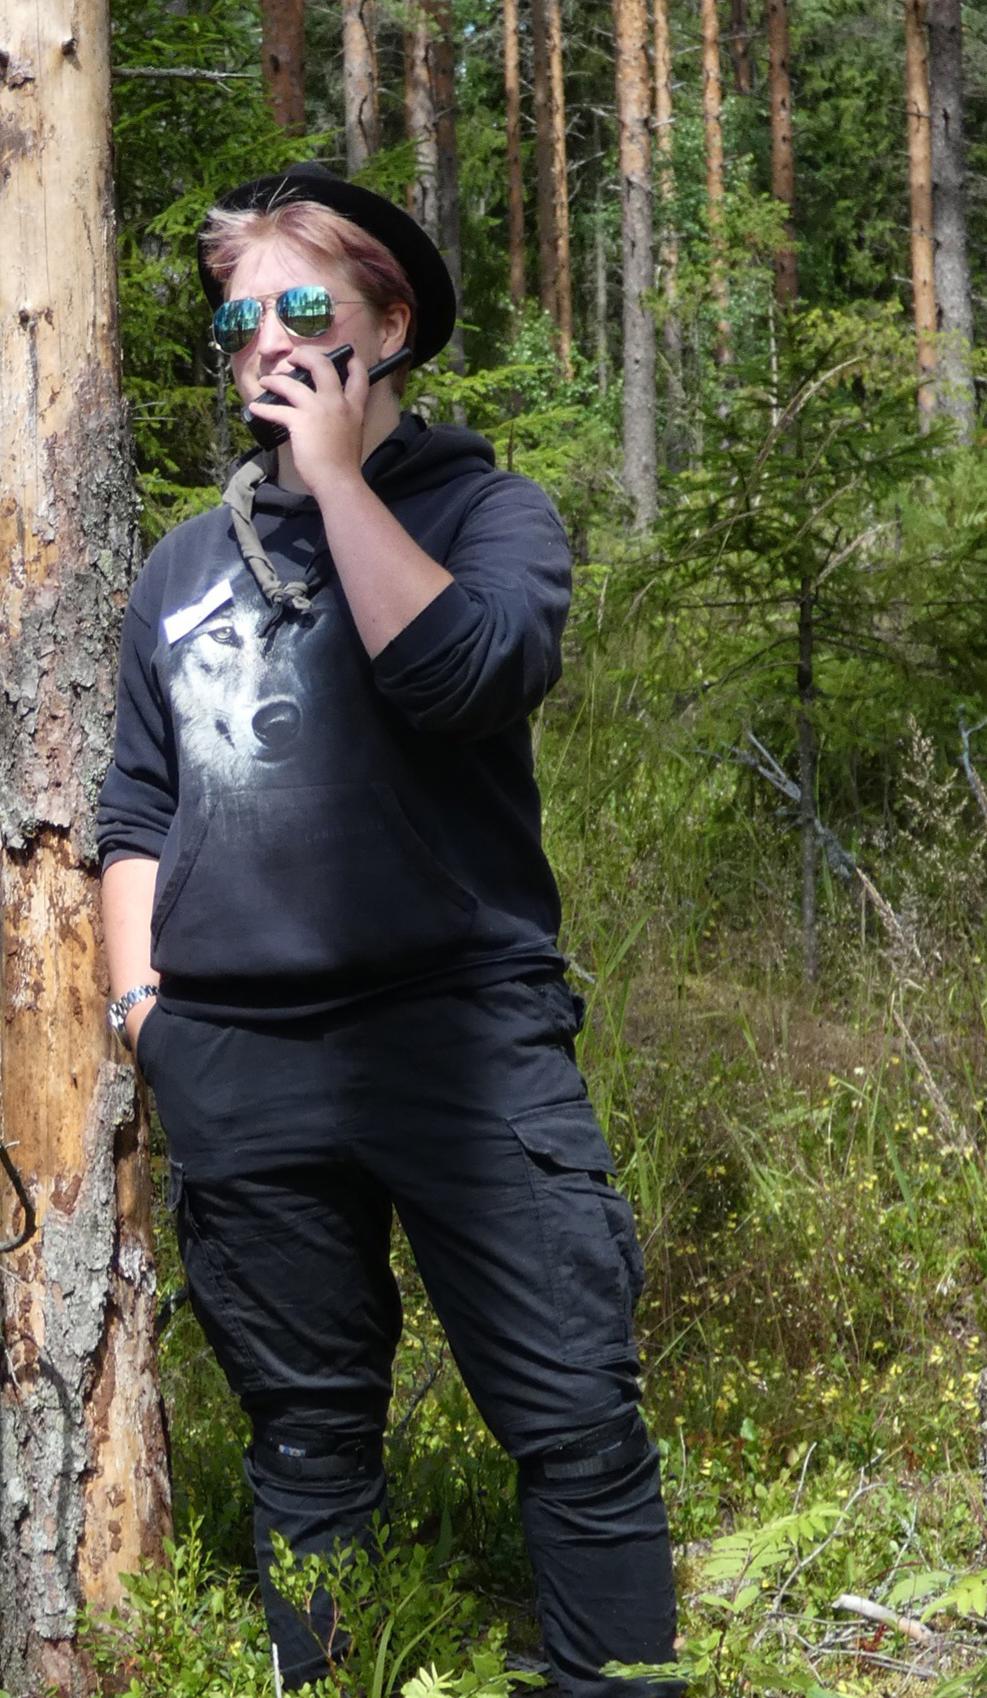 tummiin pukeutunut nainen nojaa puuhun ja puhuu radiopuhelimeen, taustalla metsää.